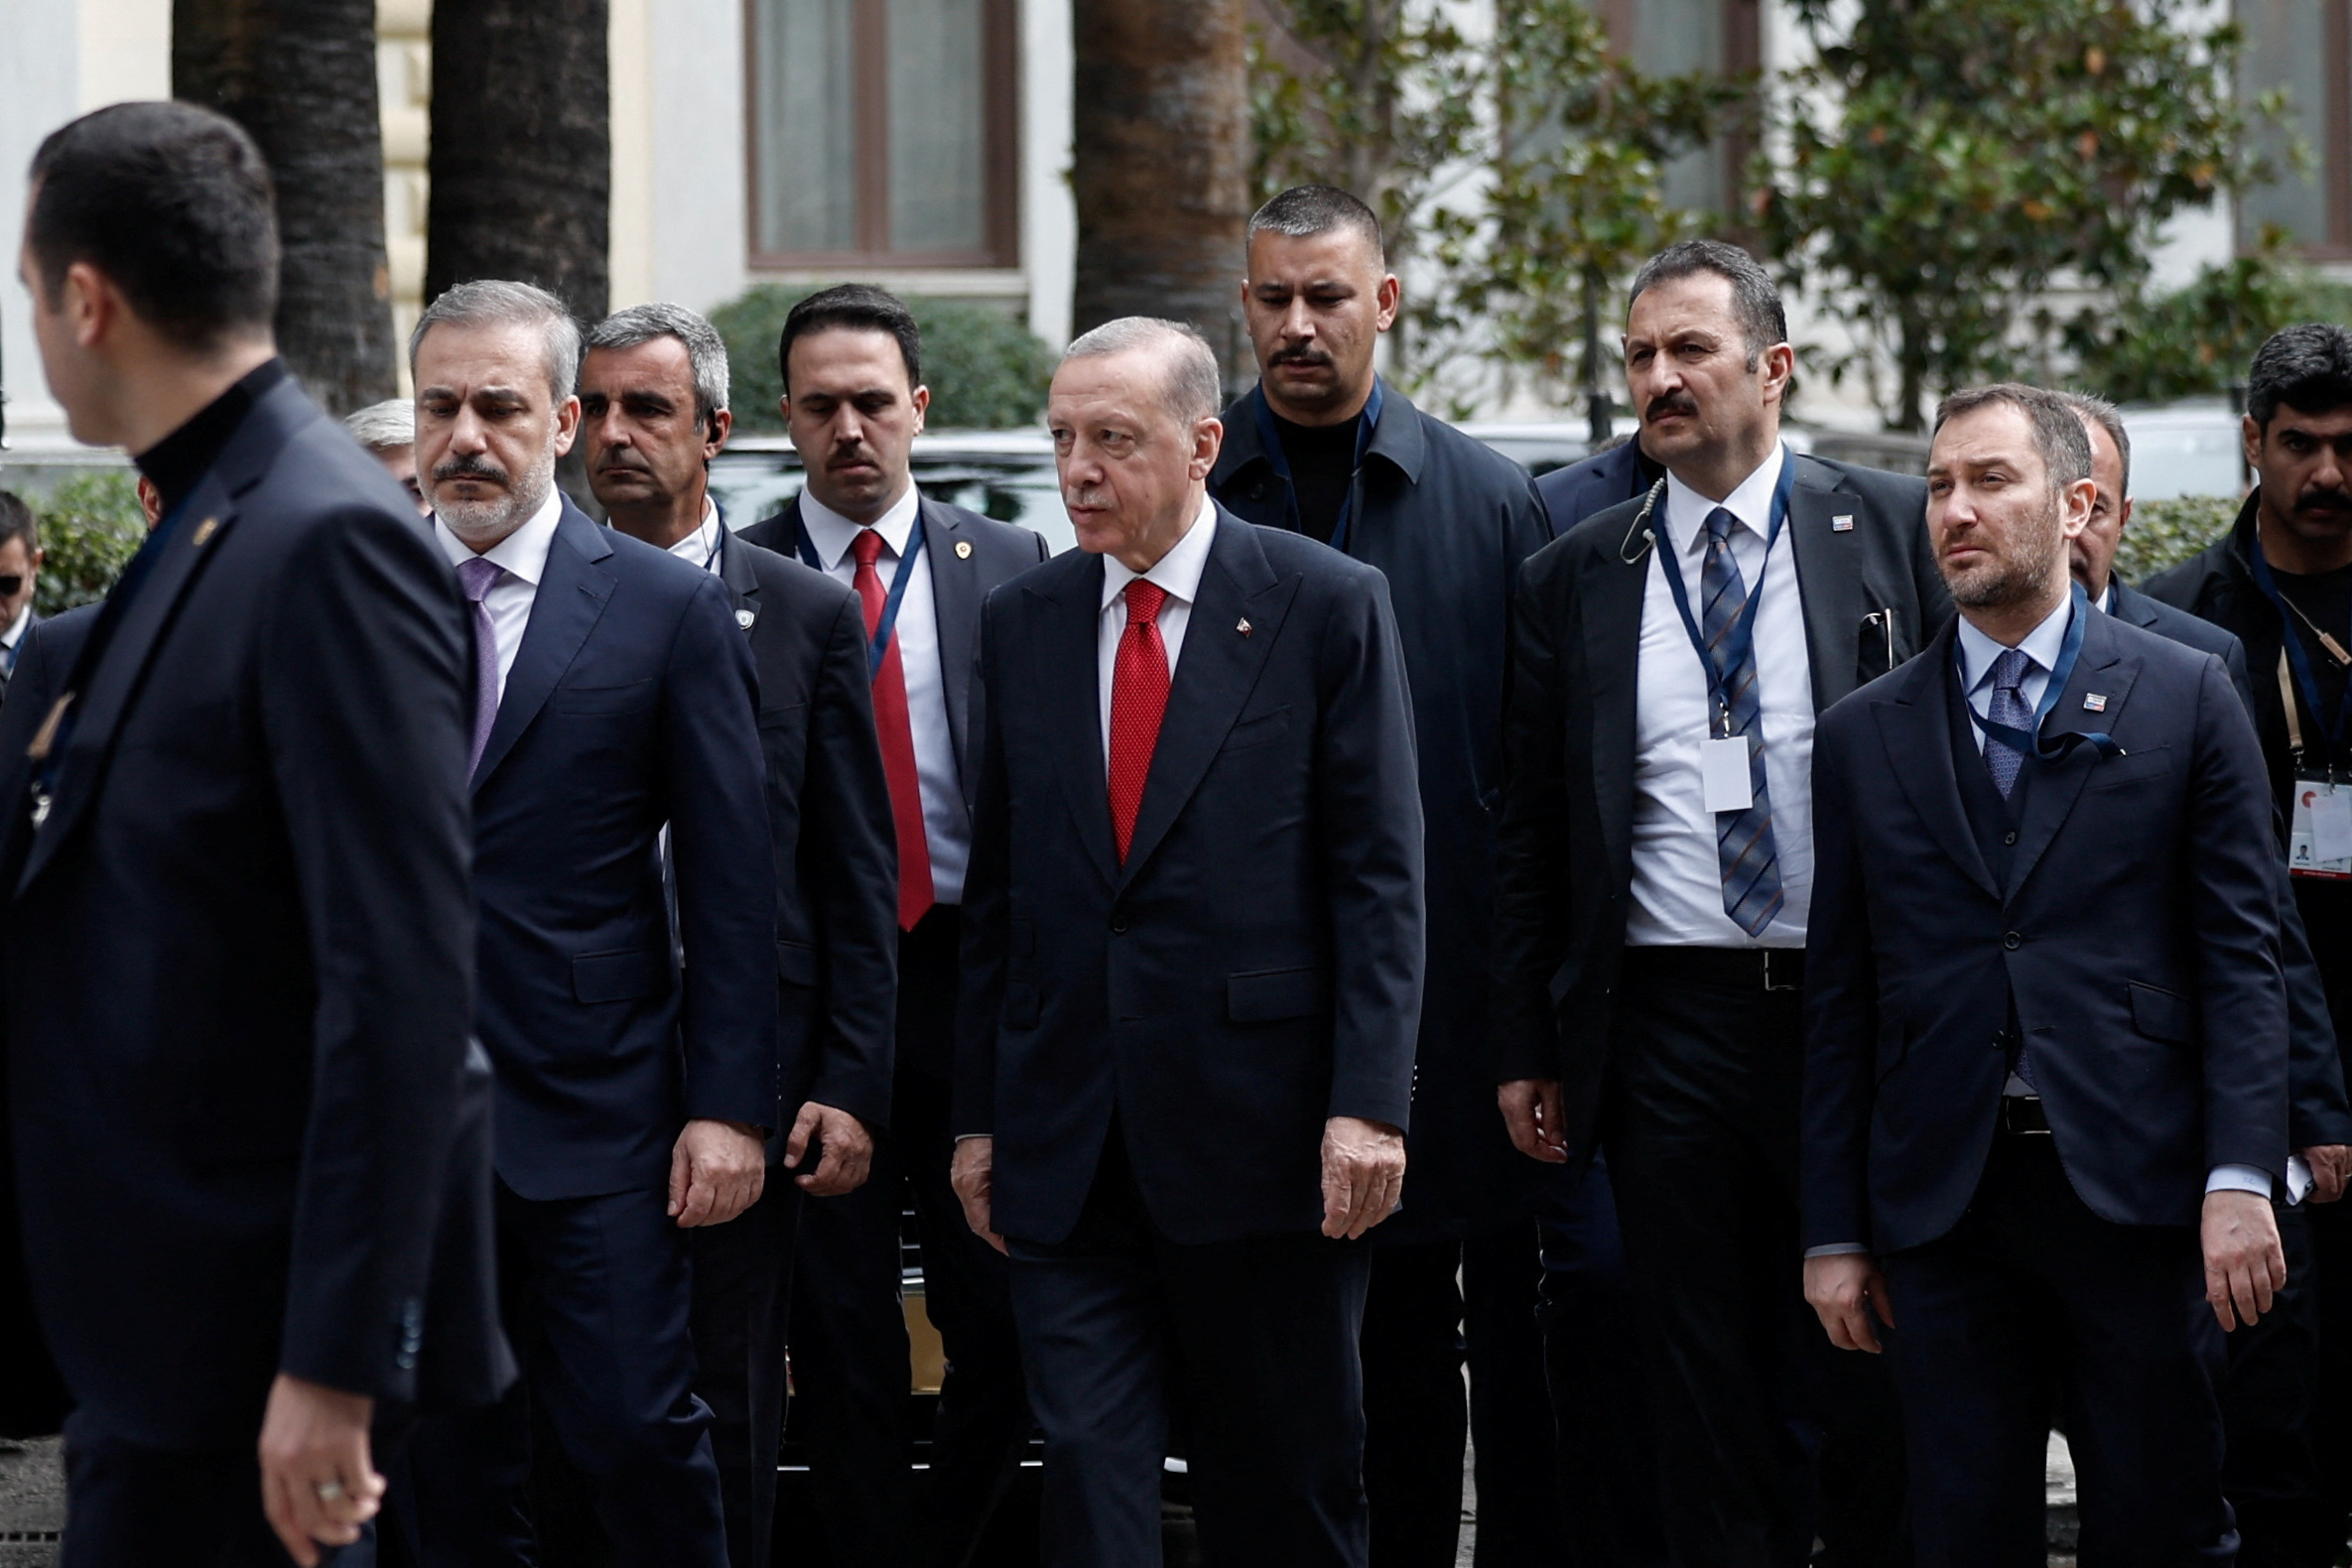 Επίσκεψη Ερντογάν στην Αθήνα: Ποιοι δρόμοι θα κλείσουν όταν φύγει ο Τούρκος πρόεδρος